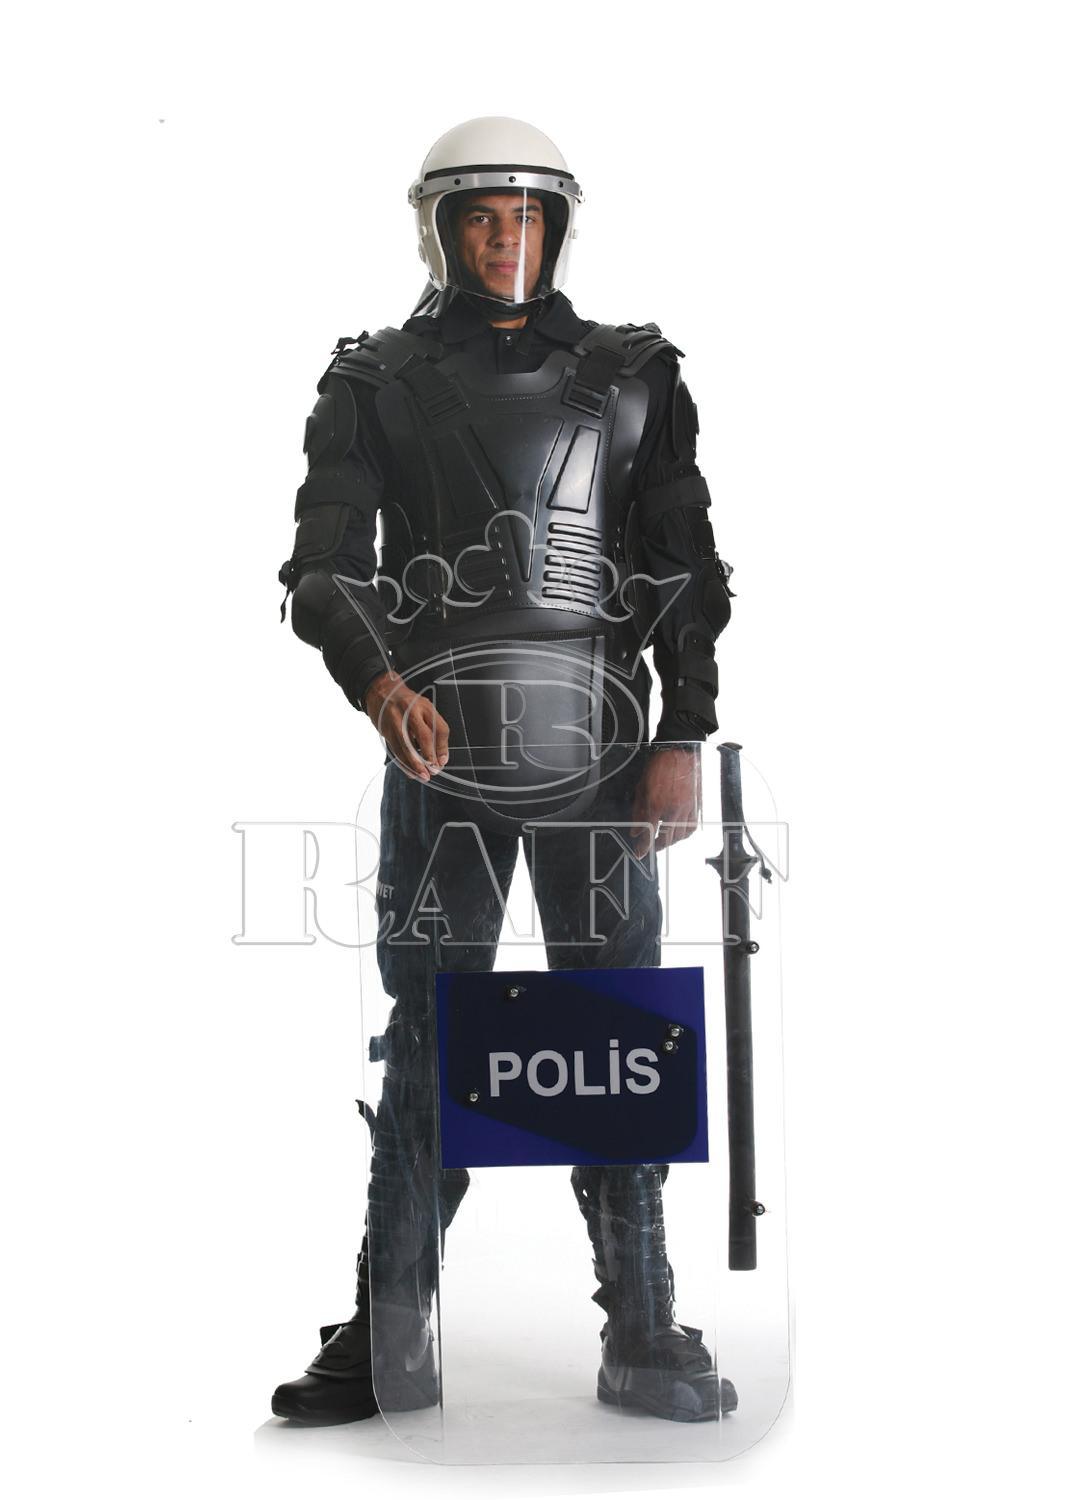 Policía / Uniforme de Seguridad